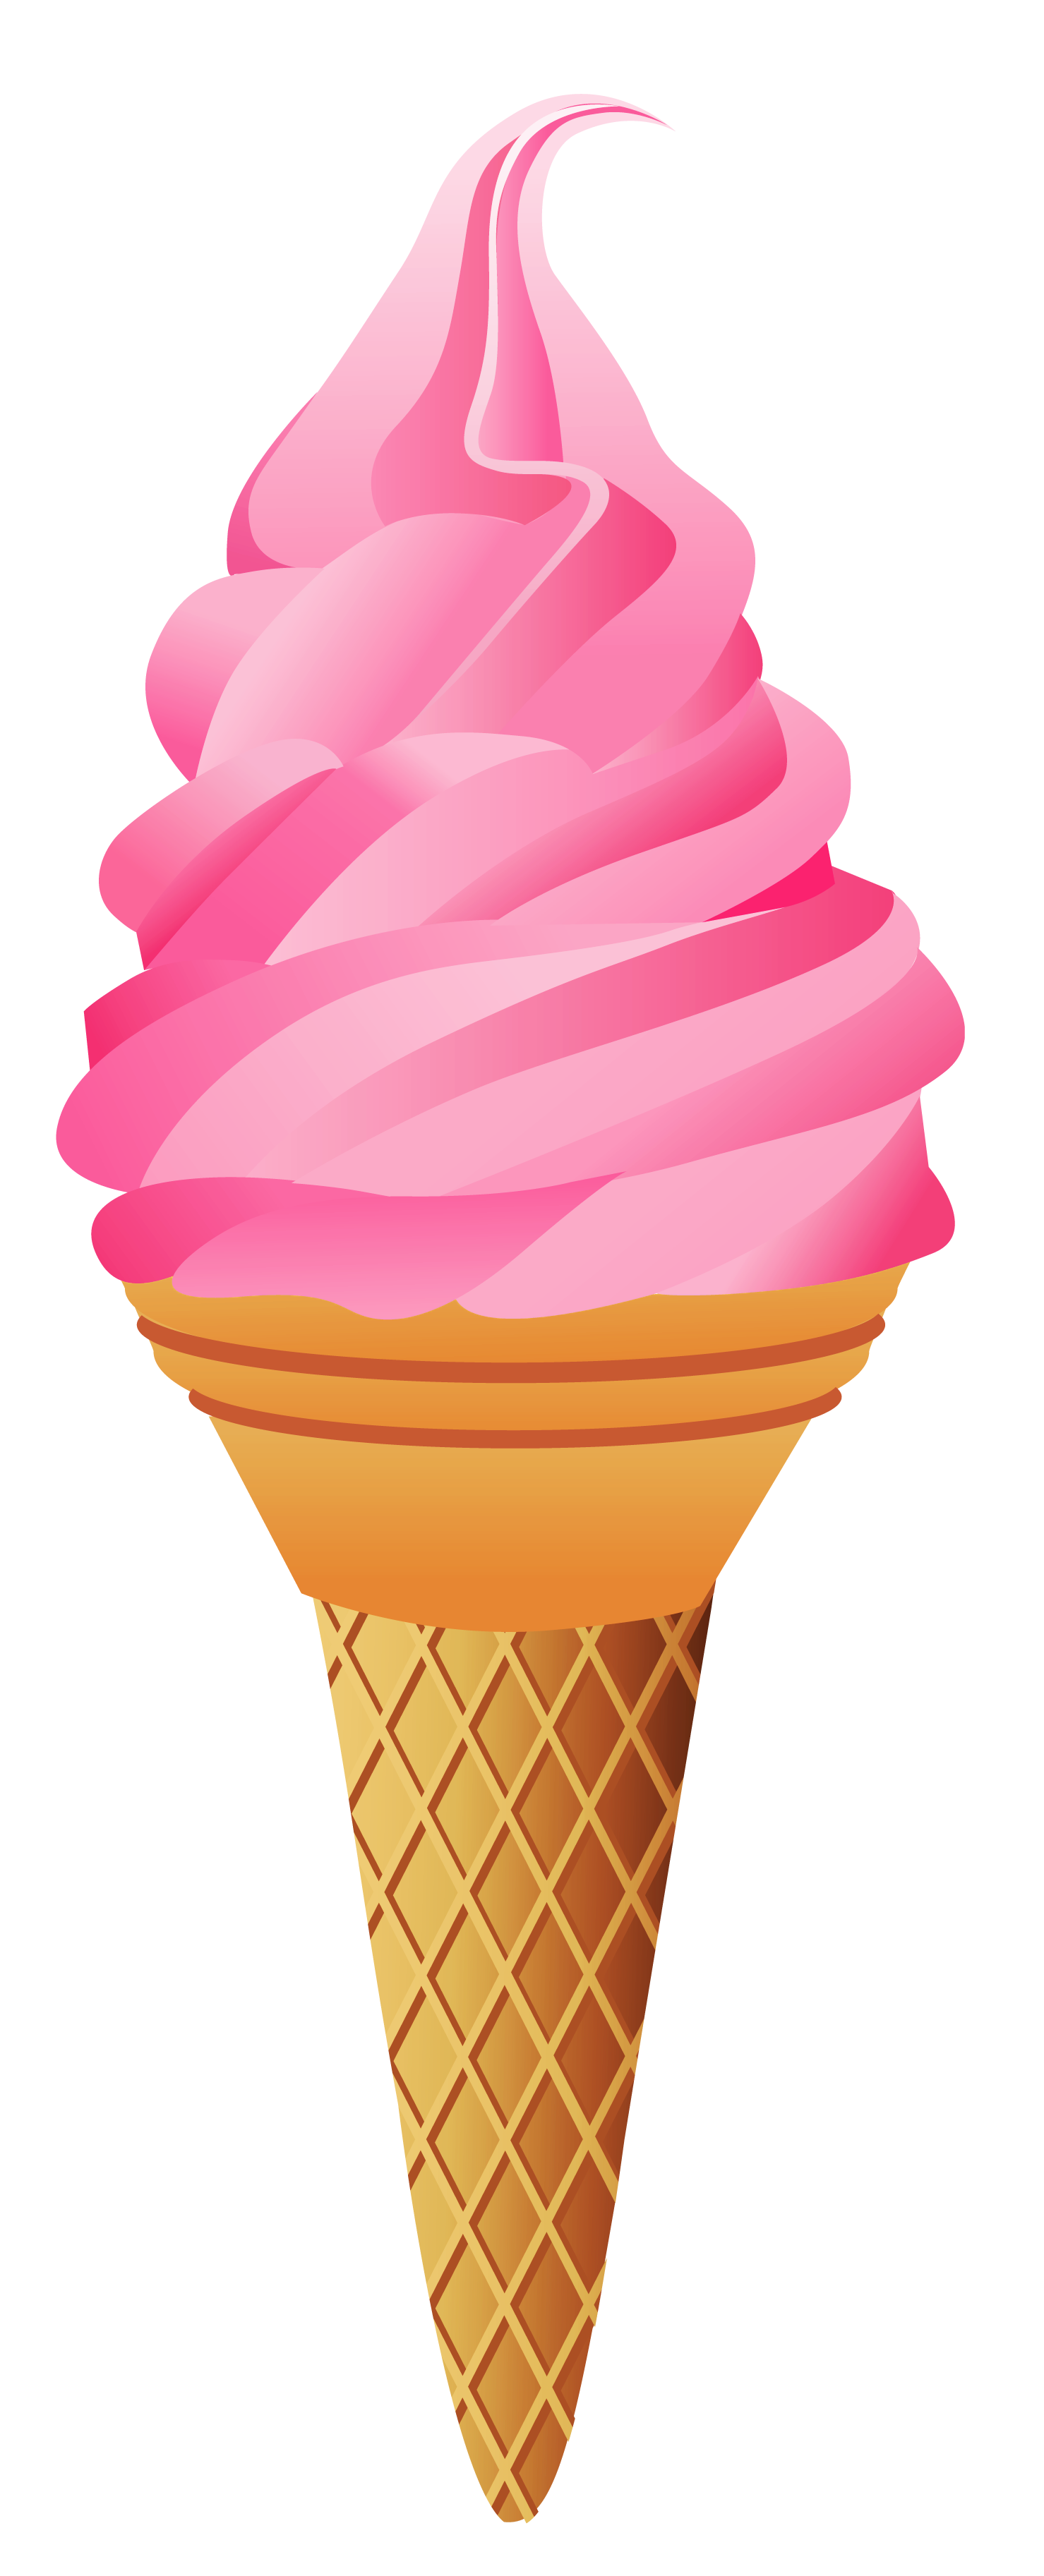 Transparent strawberry cone picture. Corn clipart ice cream